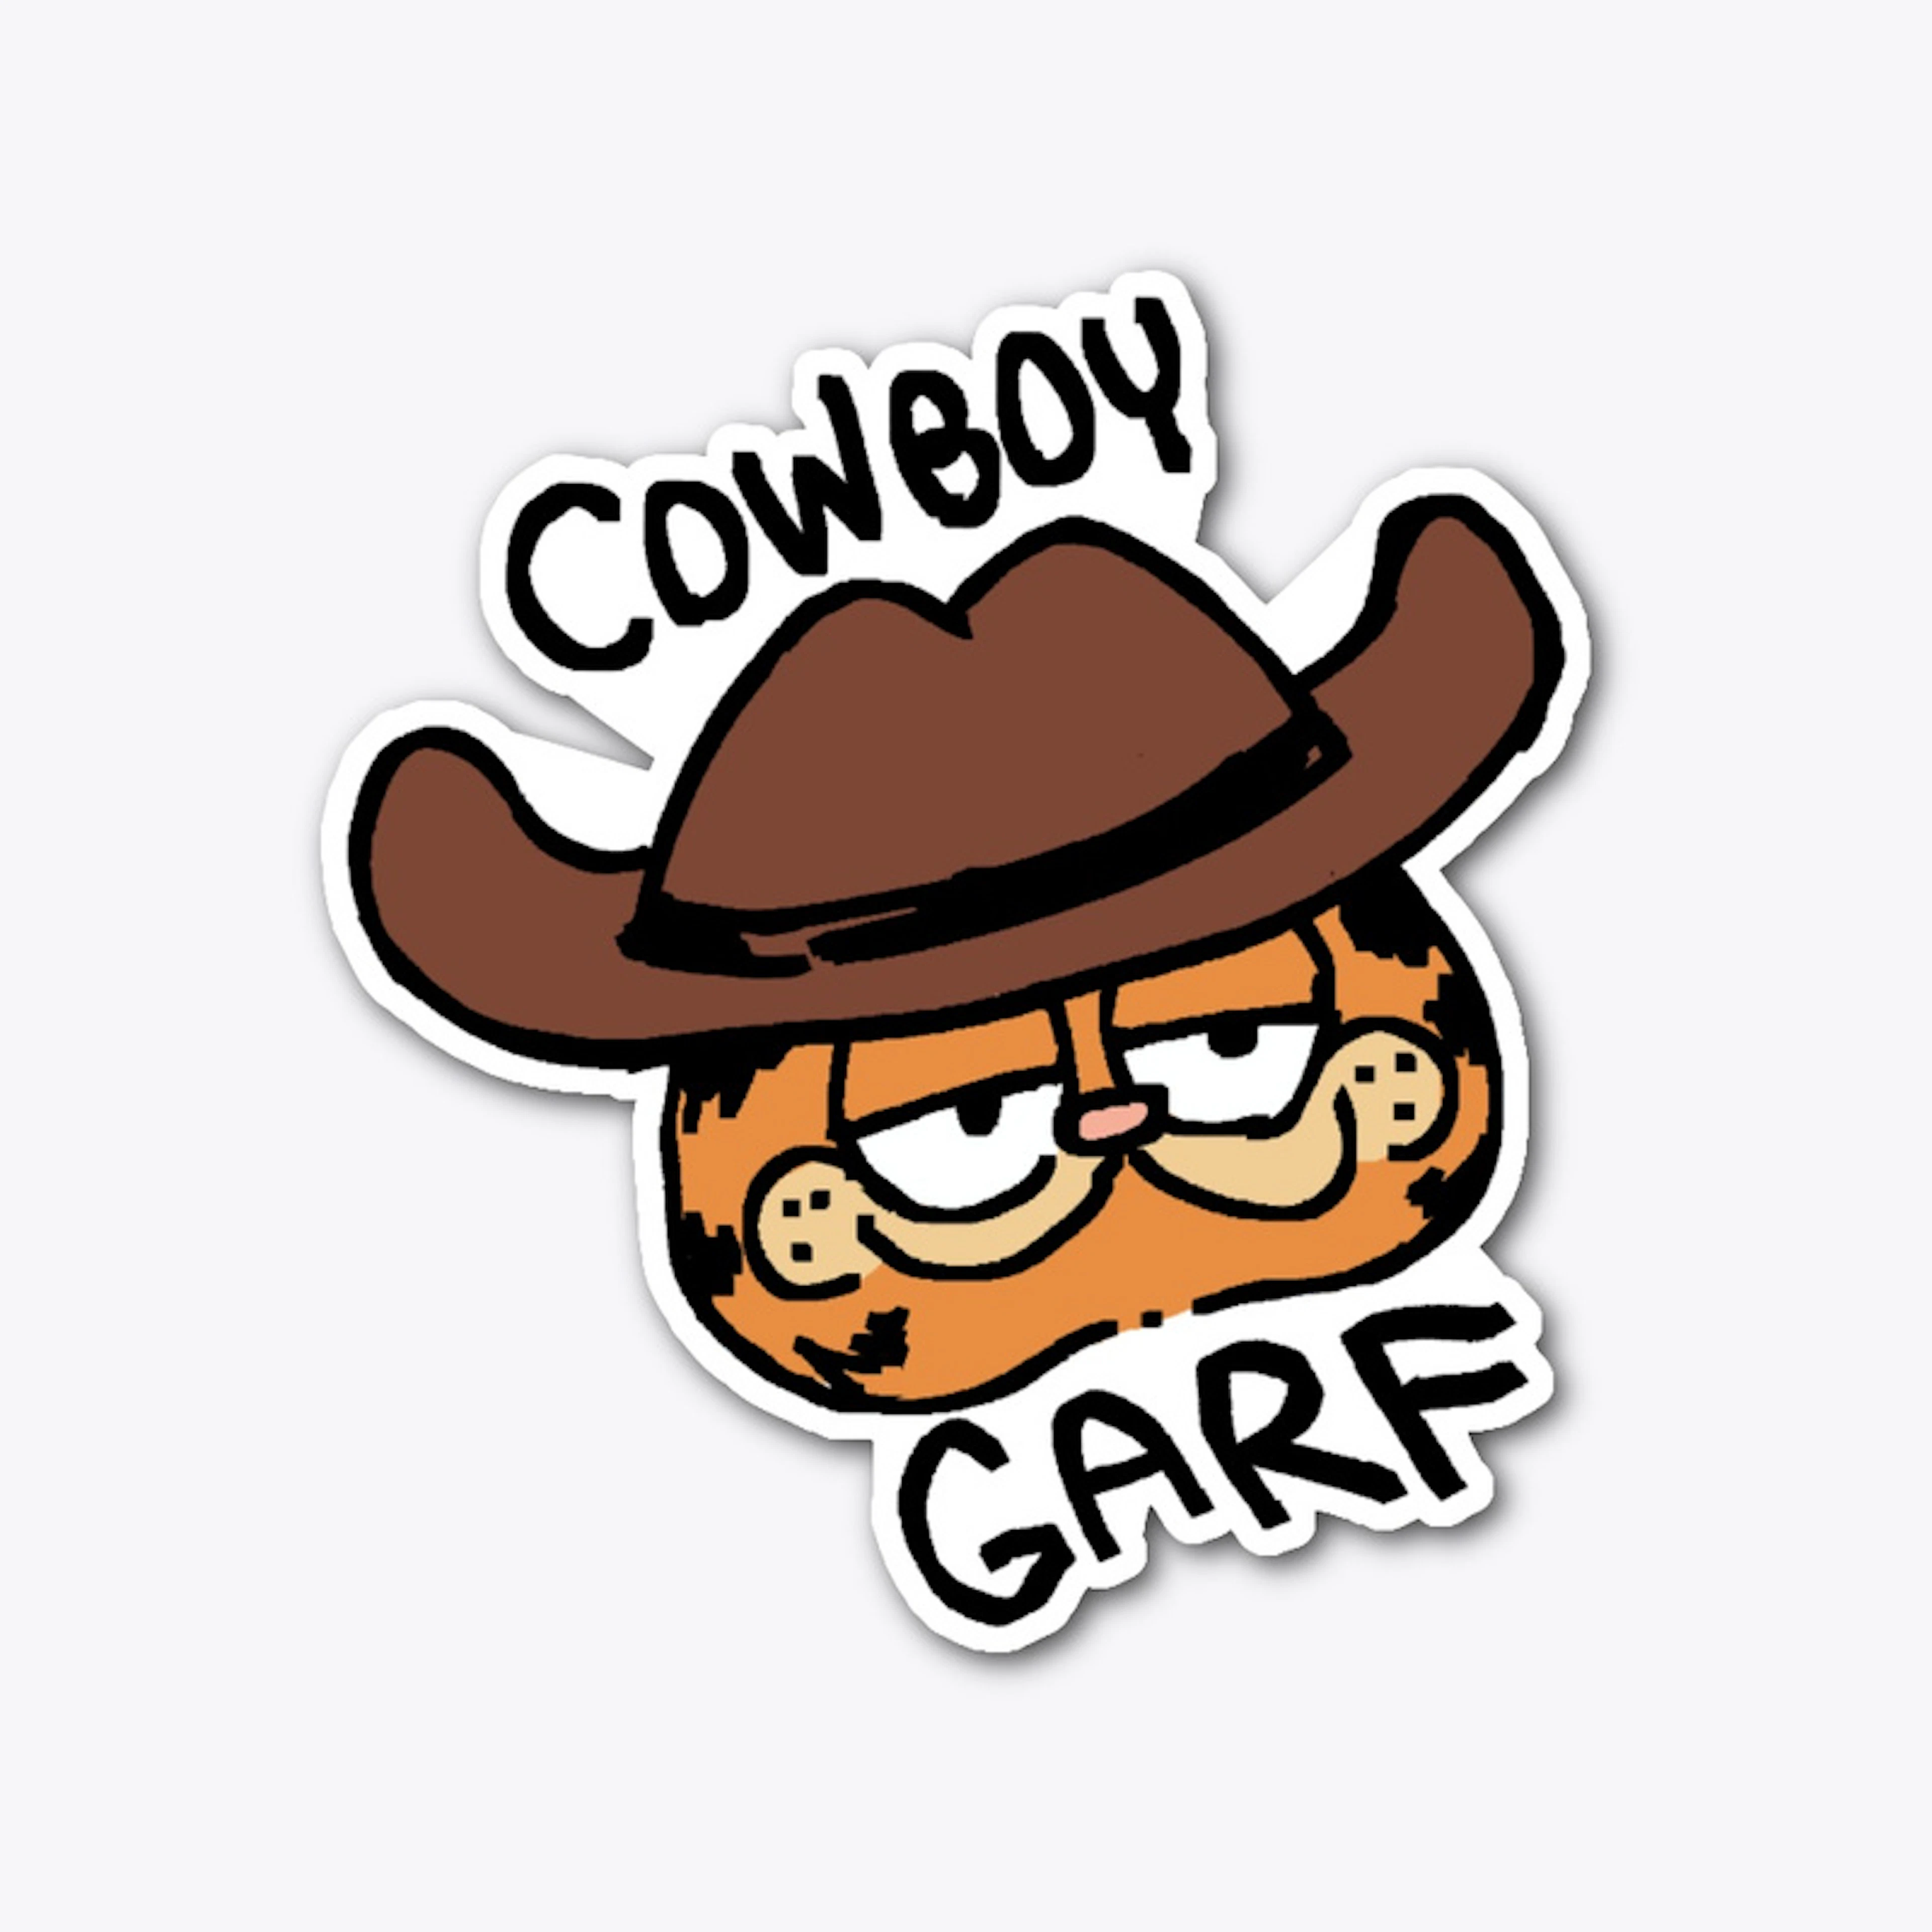 Cowboy Garf